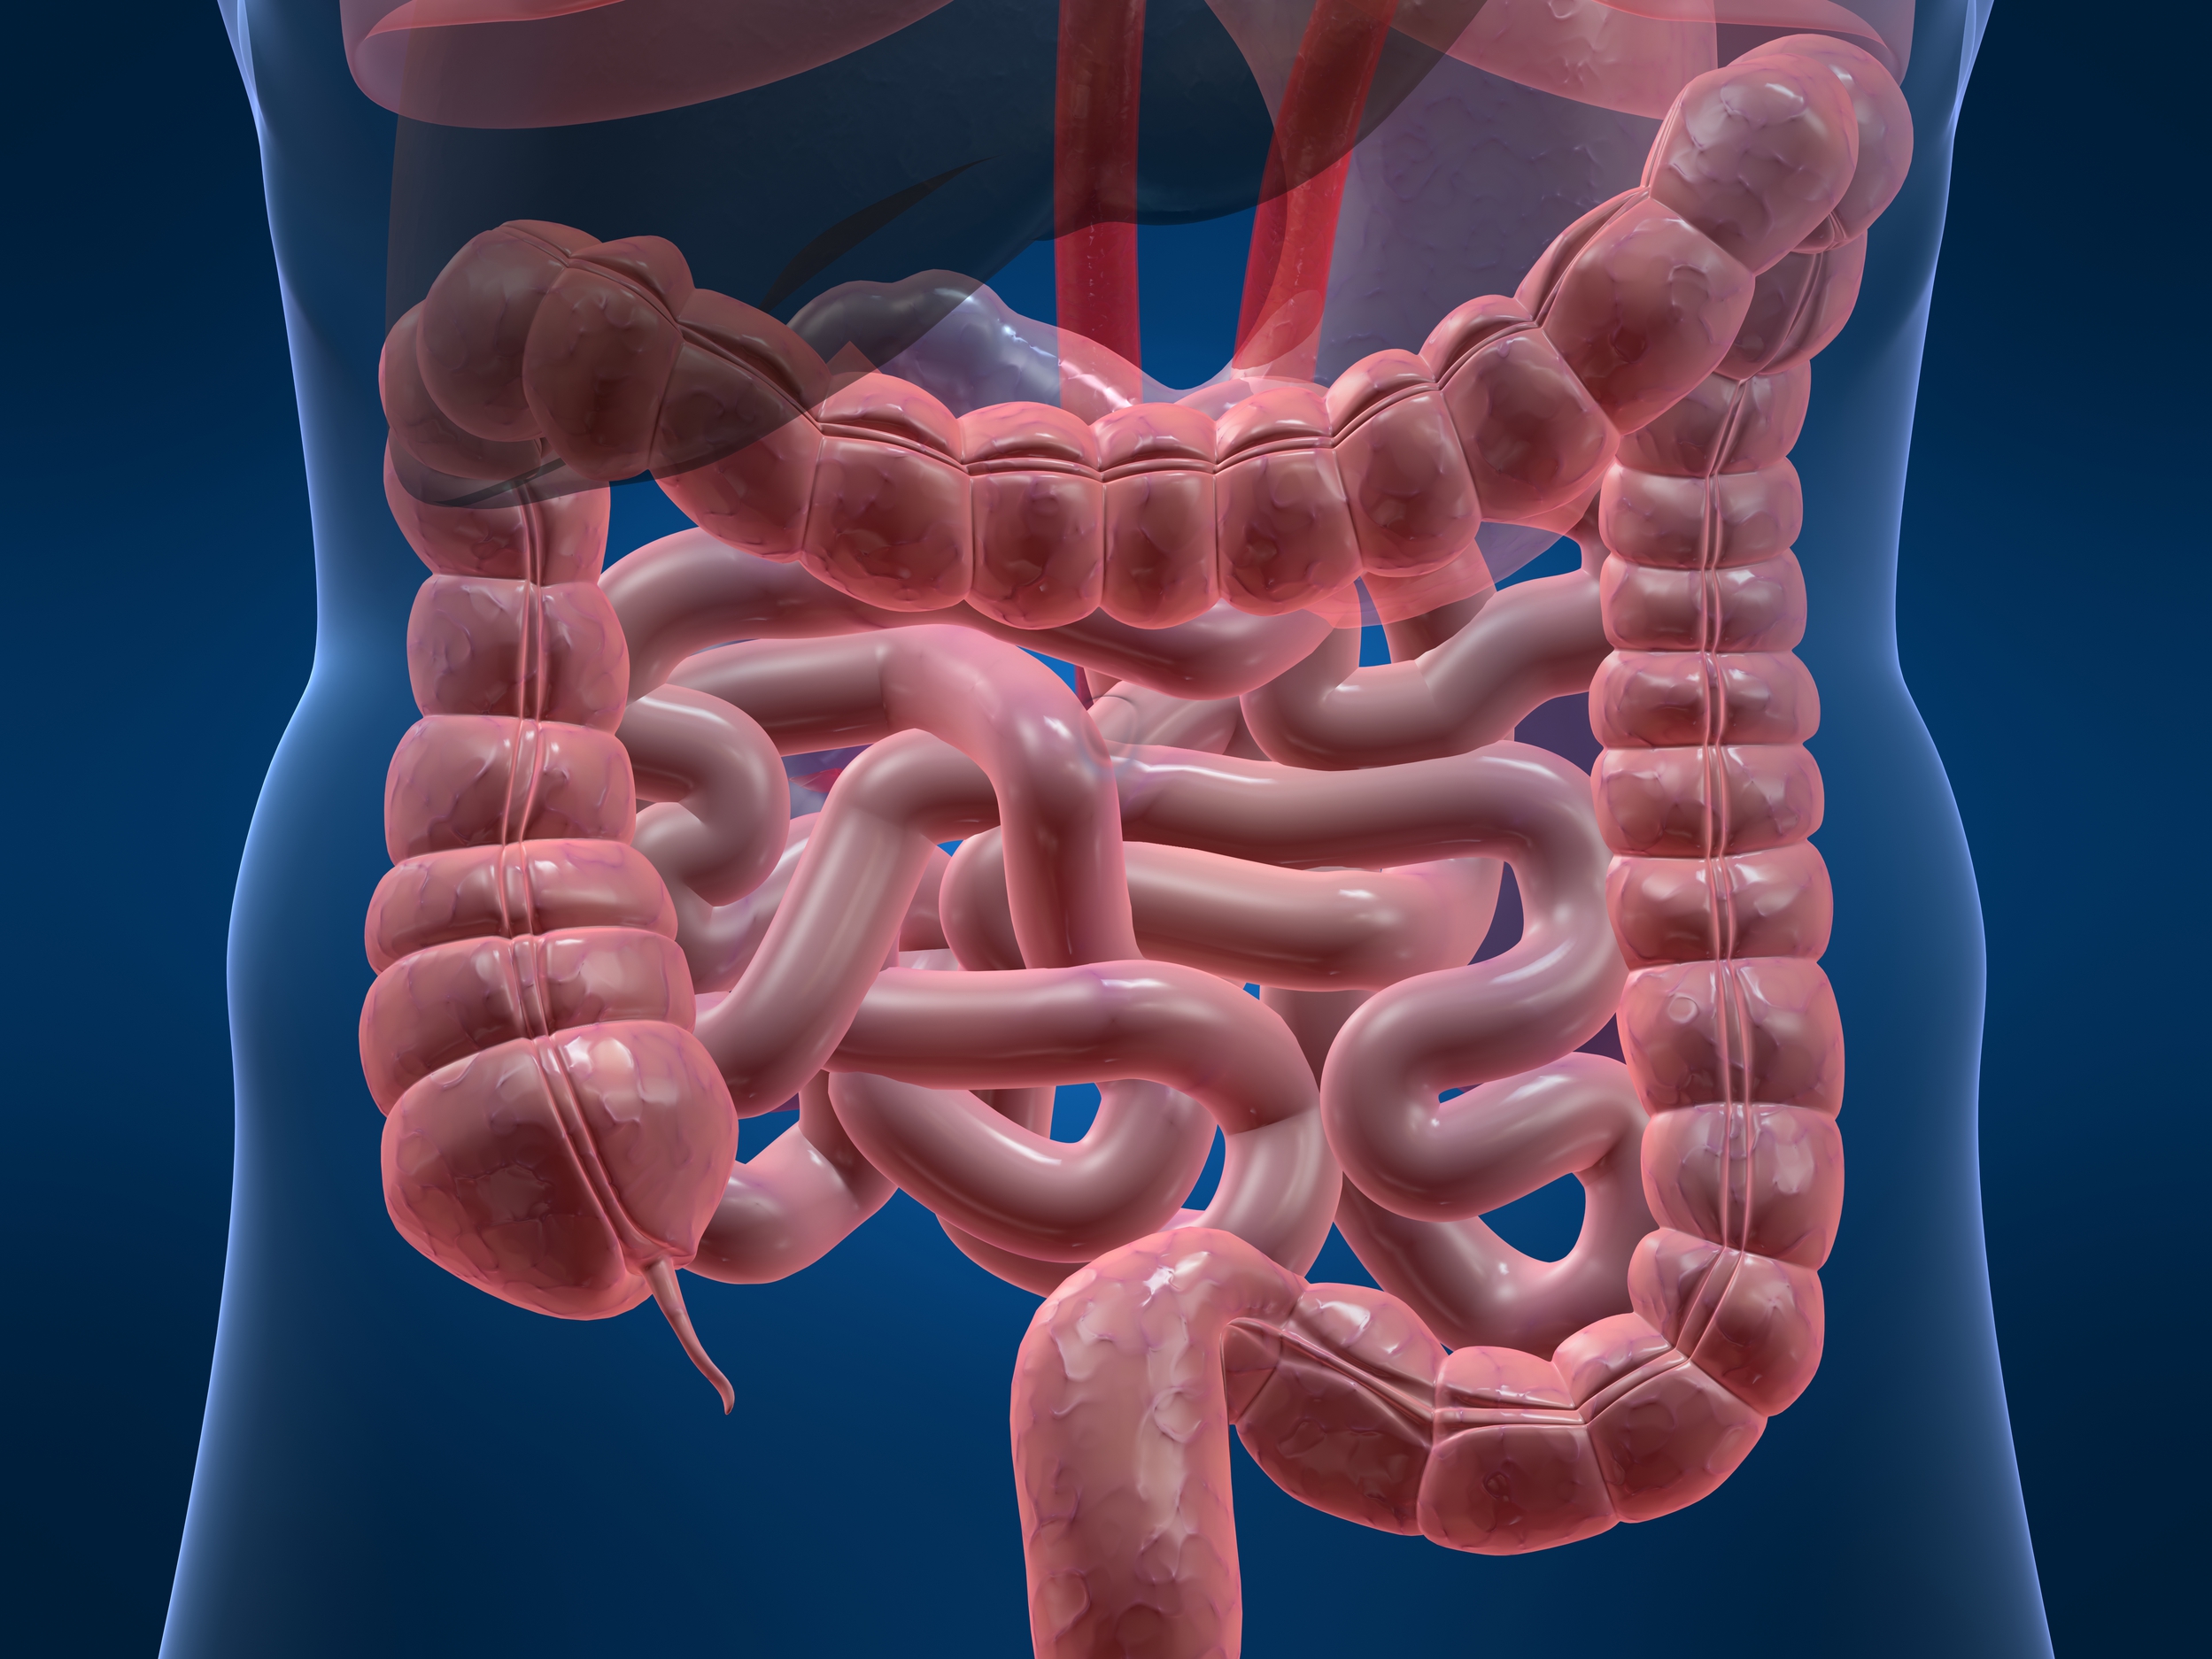 Cancro intestino, un tubo nel corpo per evitare la colostomia